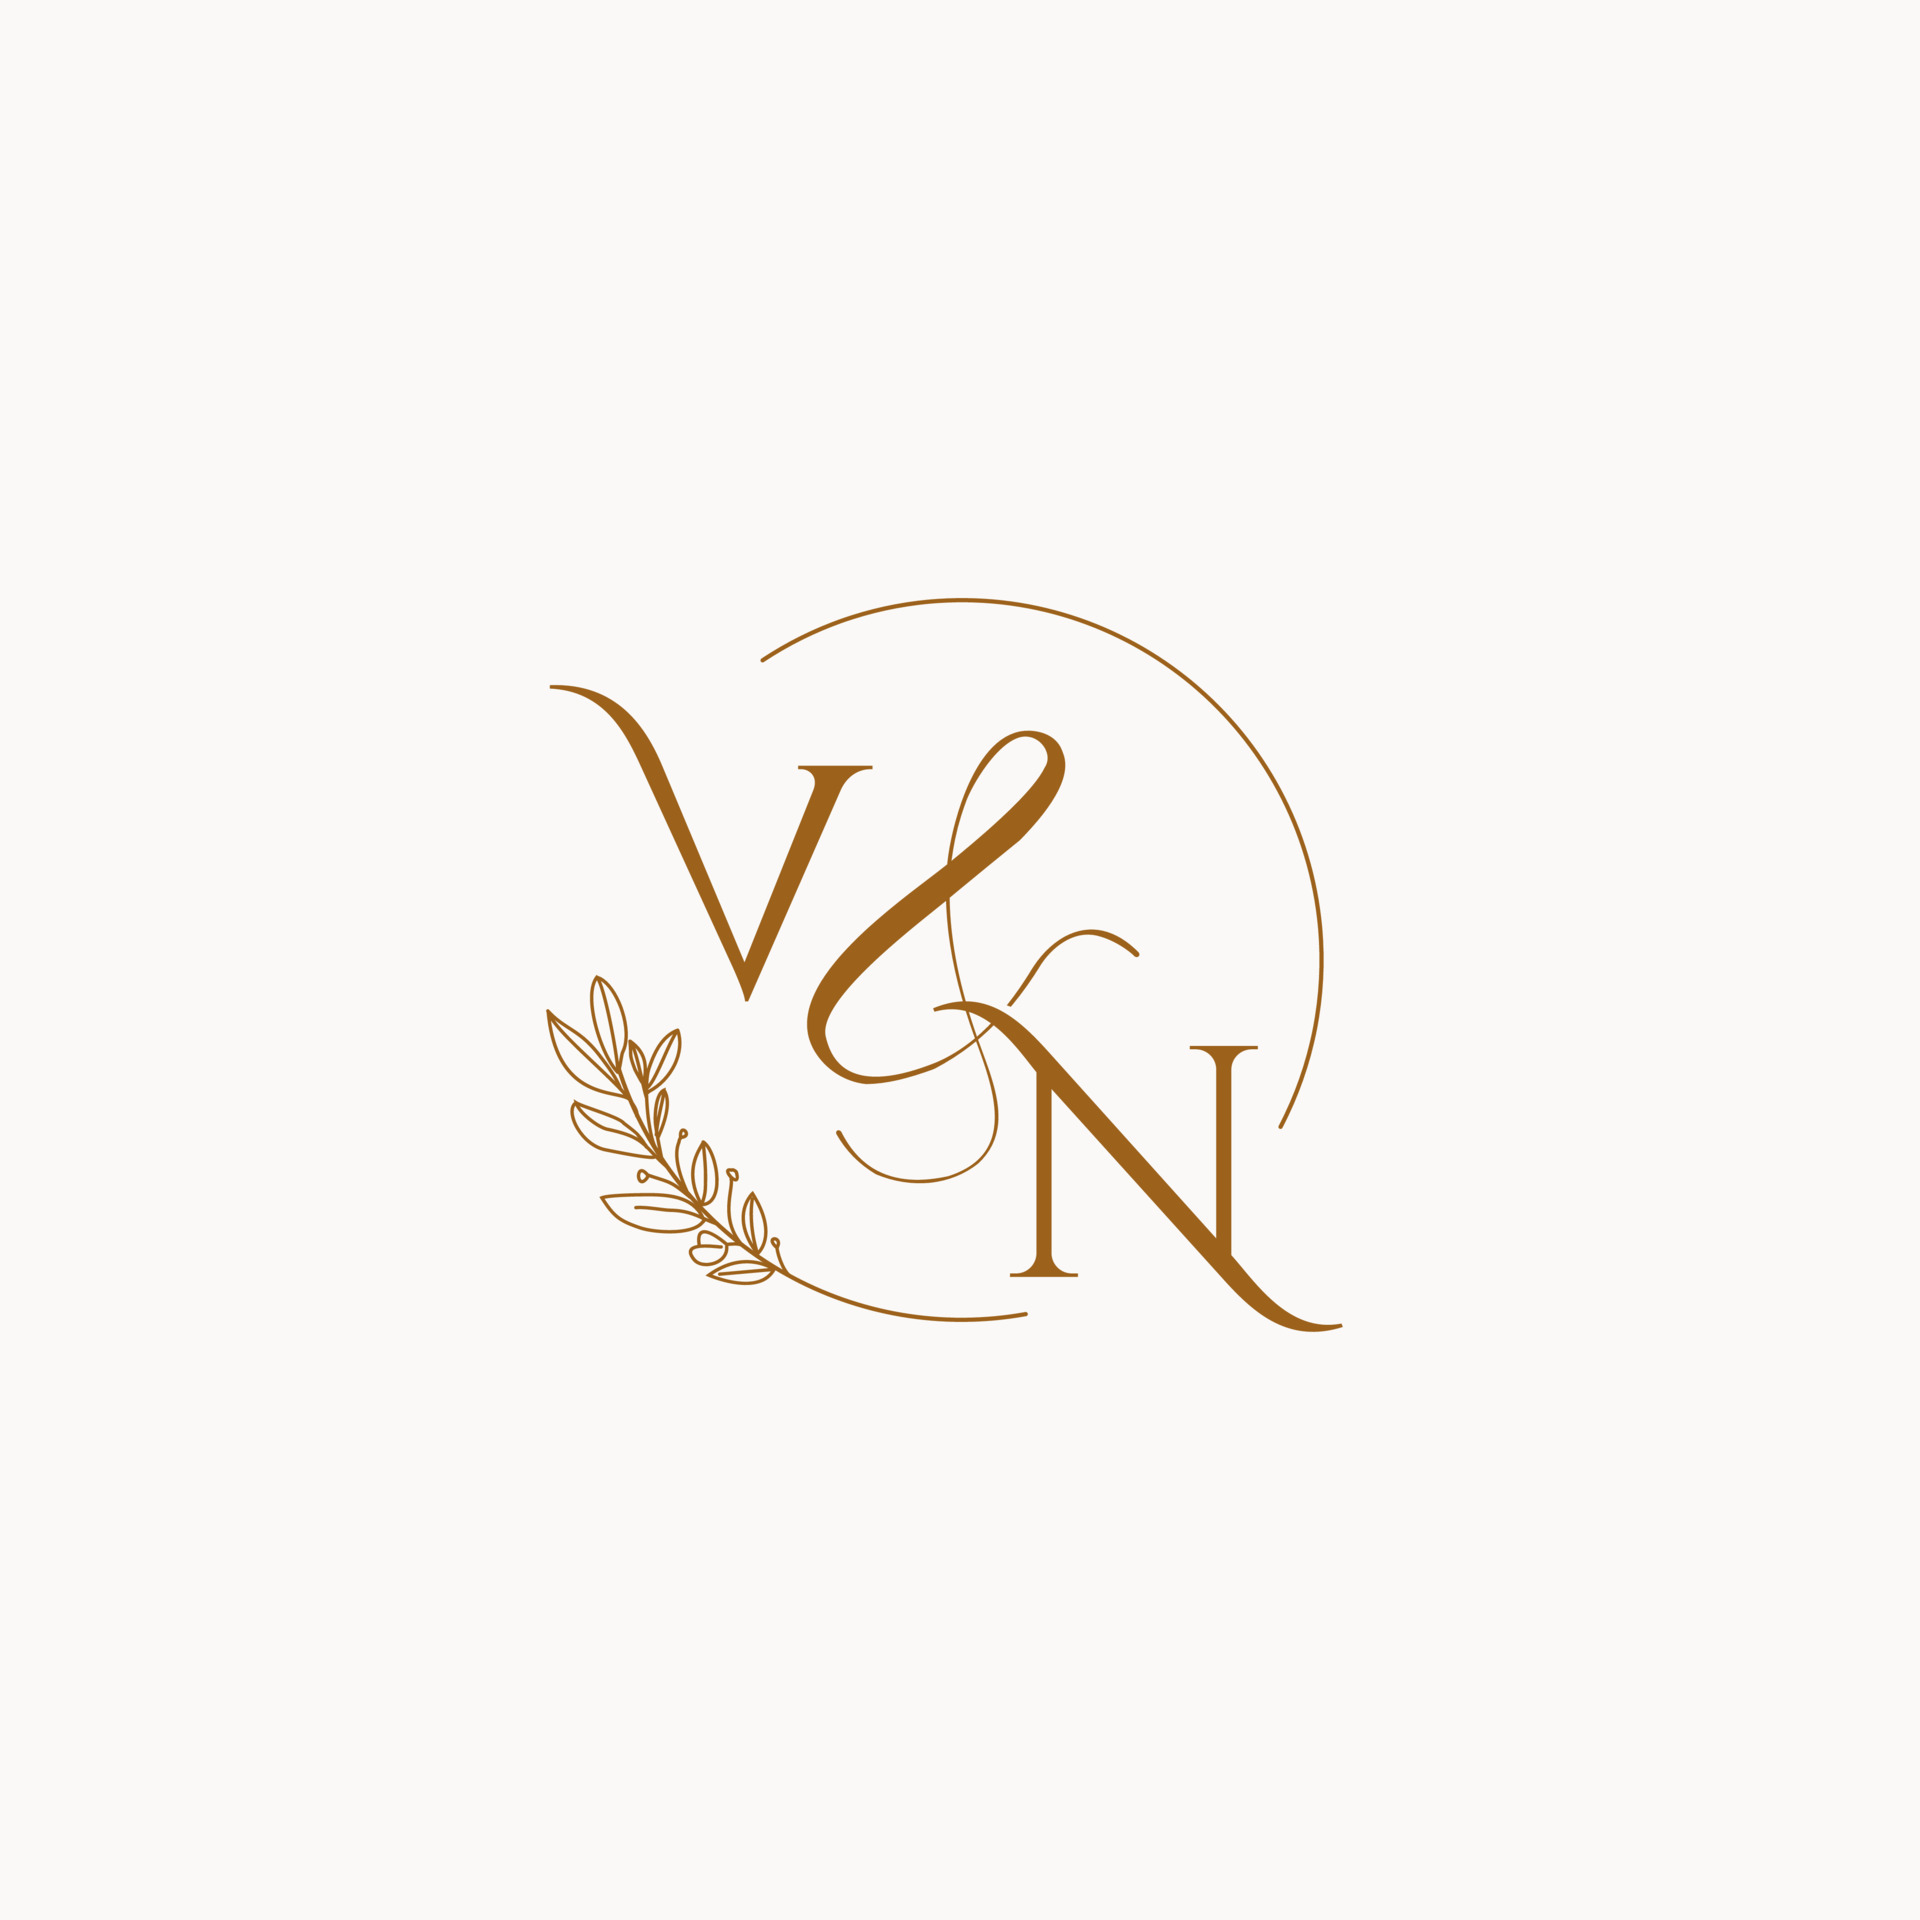 MM initial wedding monogram logo 10254894 Vector Art at Vecteezy